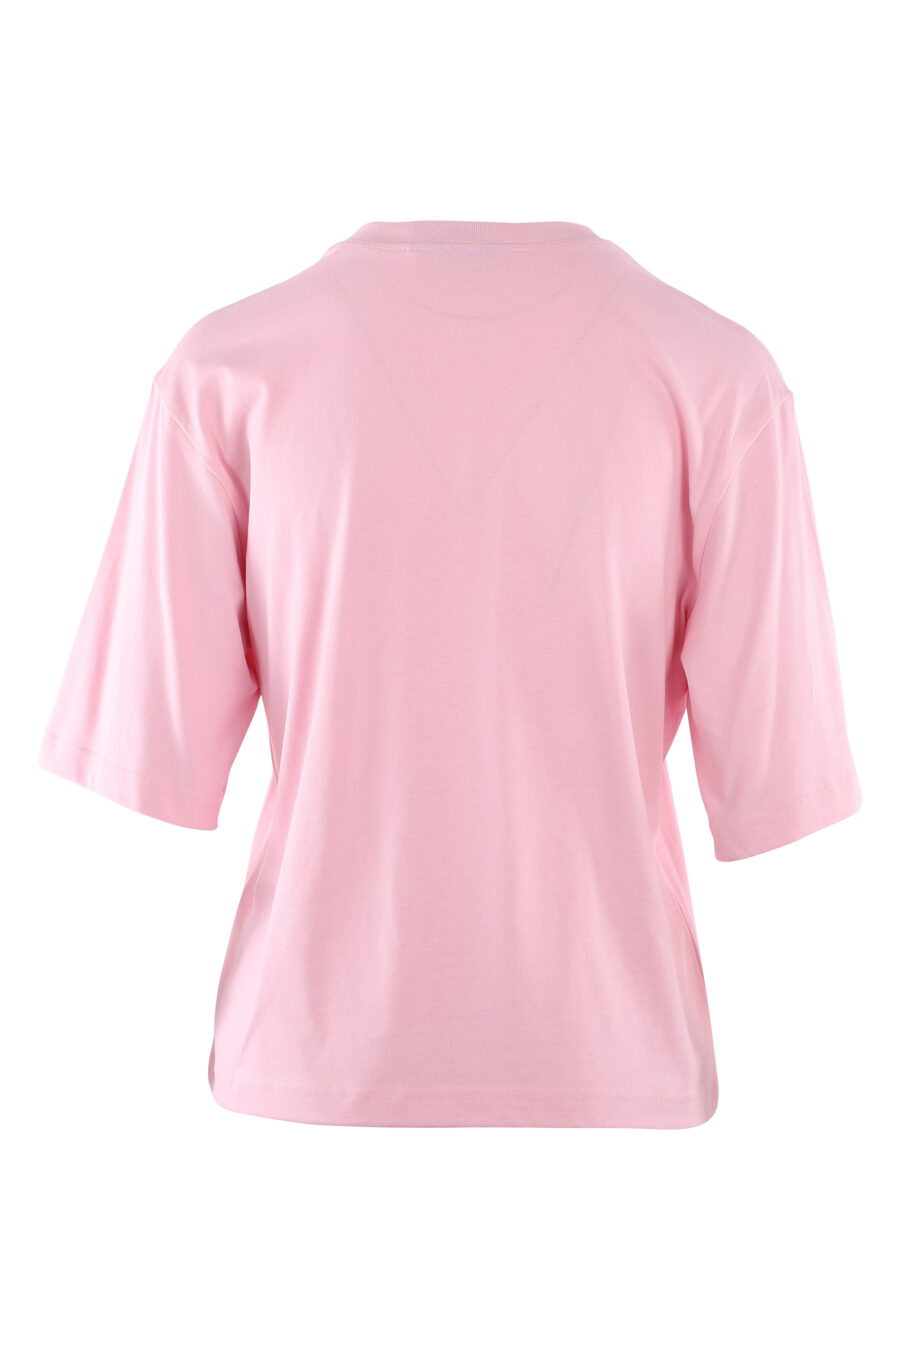 Camiseta rosa con logo ojo y estrella - IMG 6125